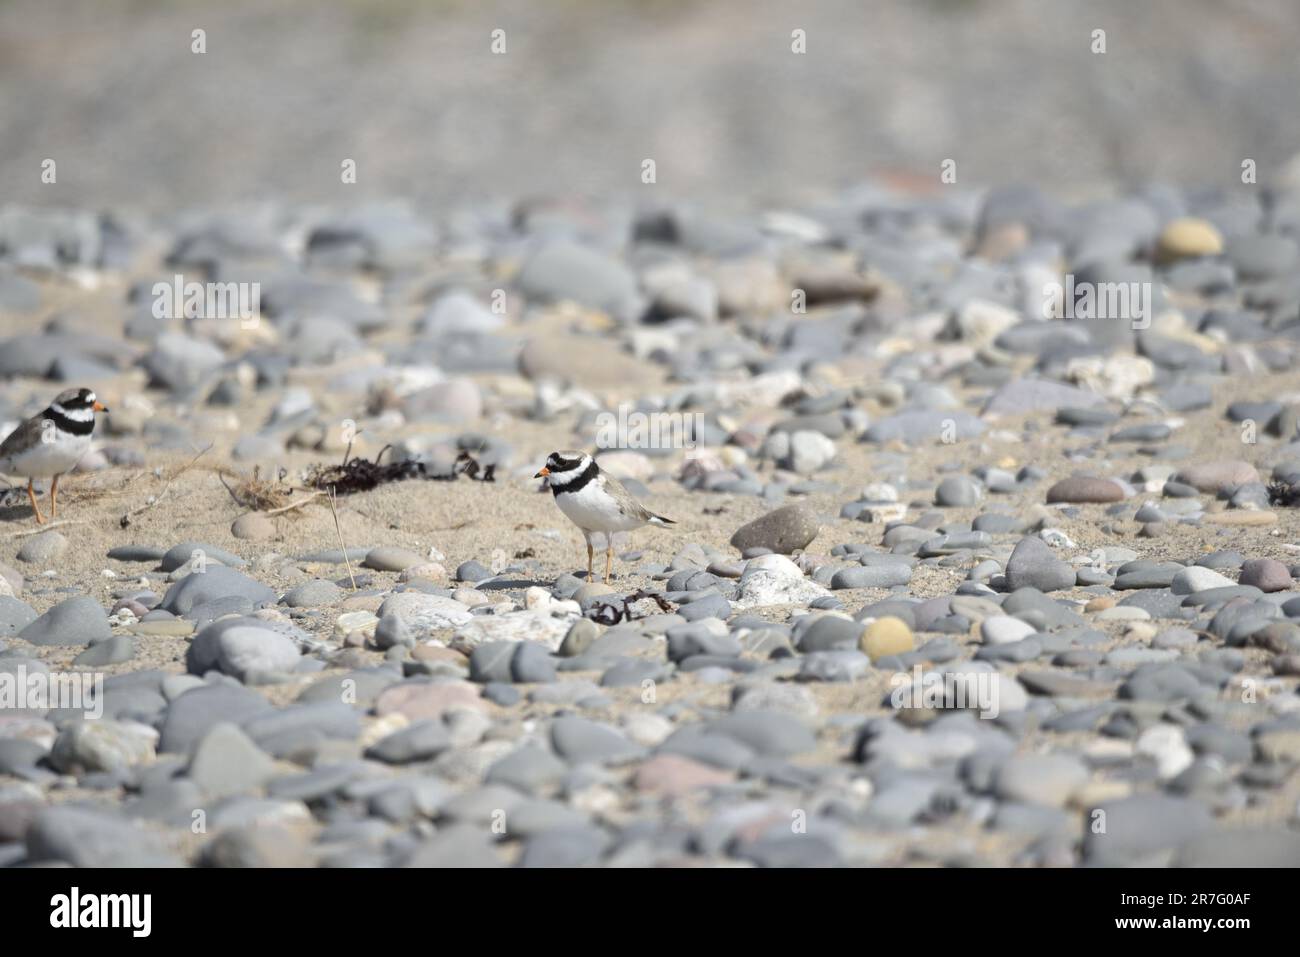 Pluvier à anneaux (Charadrius hiaticula) marcher de droite à gauche à travers une plage de galets Sunny sur l'île de Man, Royaume-Uni en mai Banque D'Images